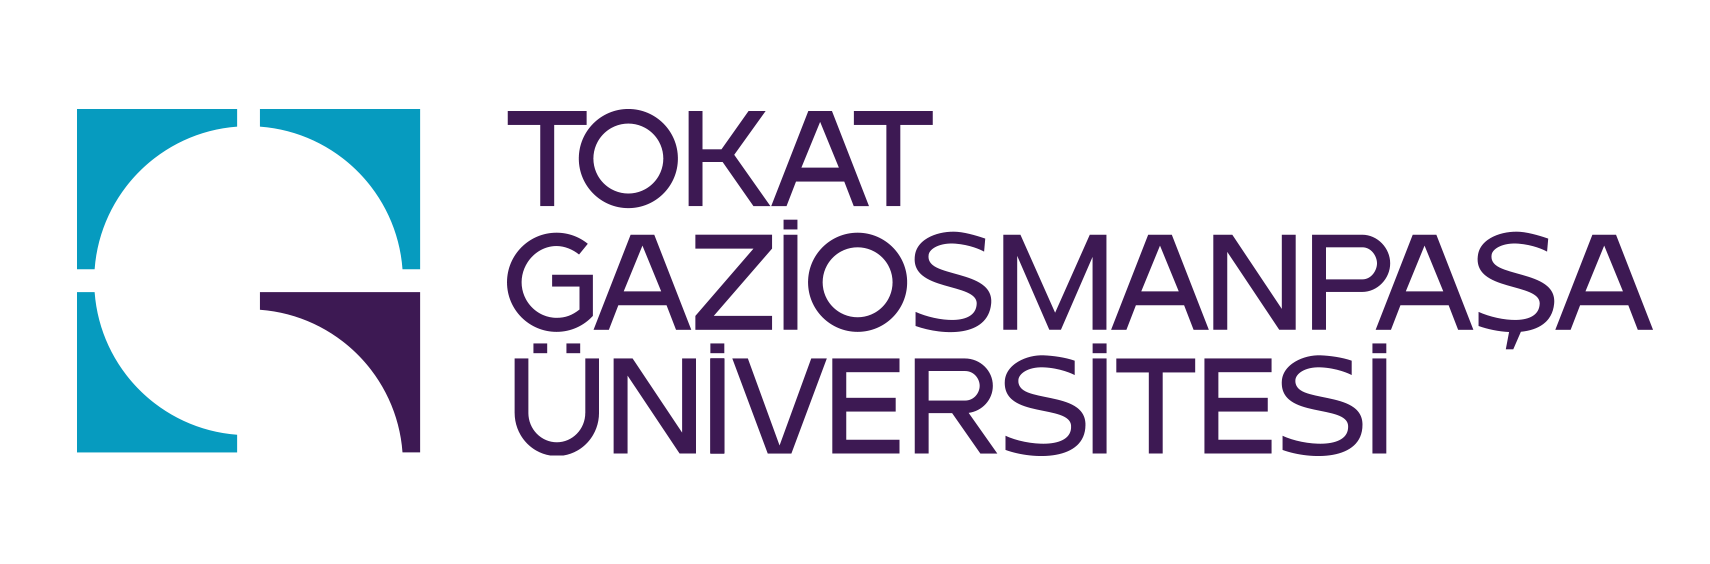 Tokat Gaziosmanpaşa University, Түркия